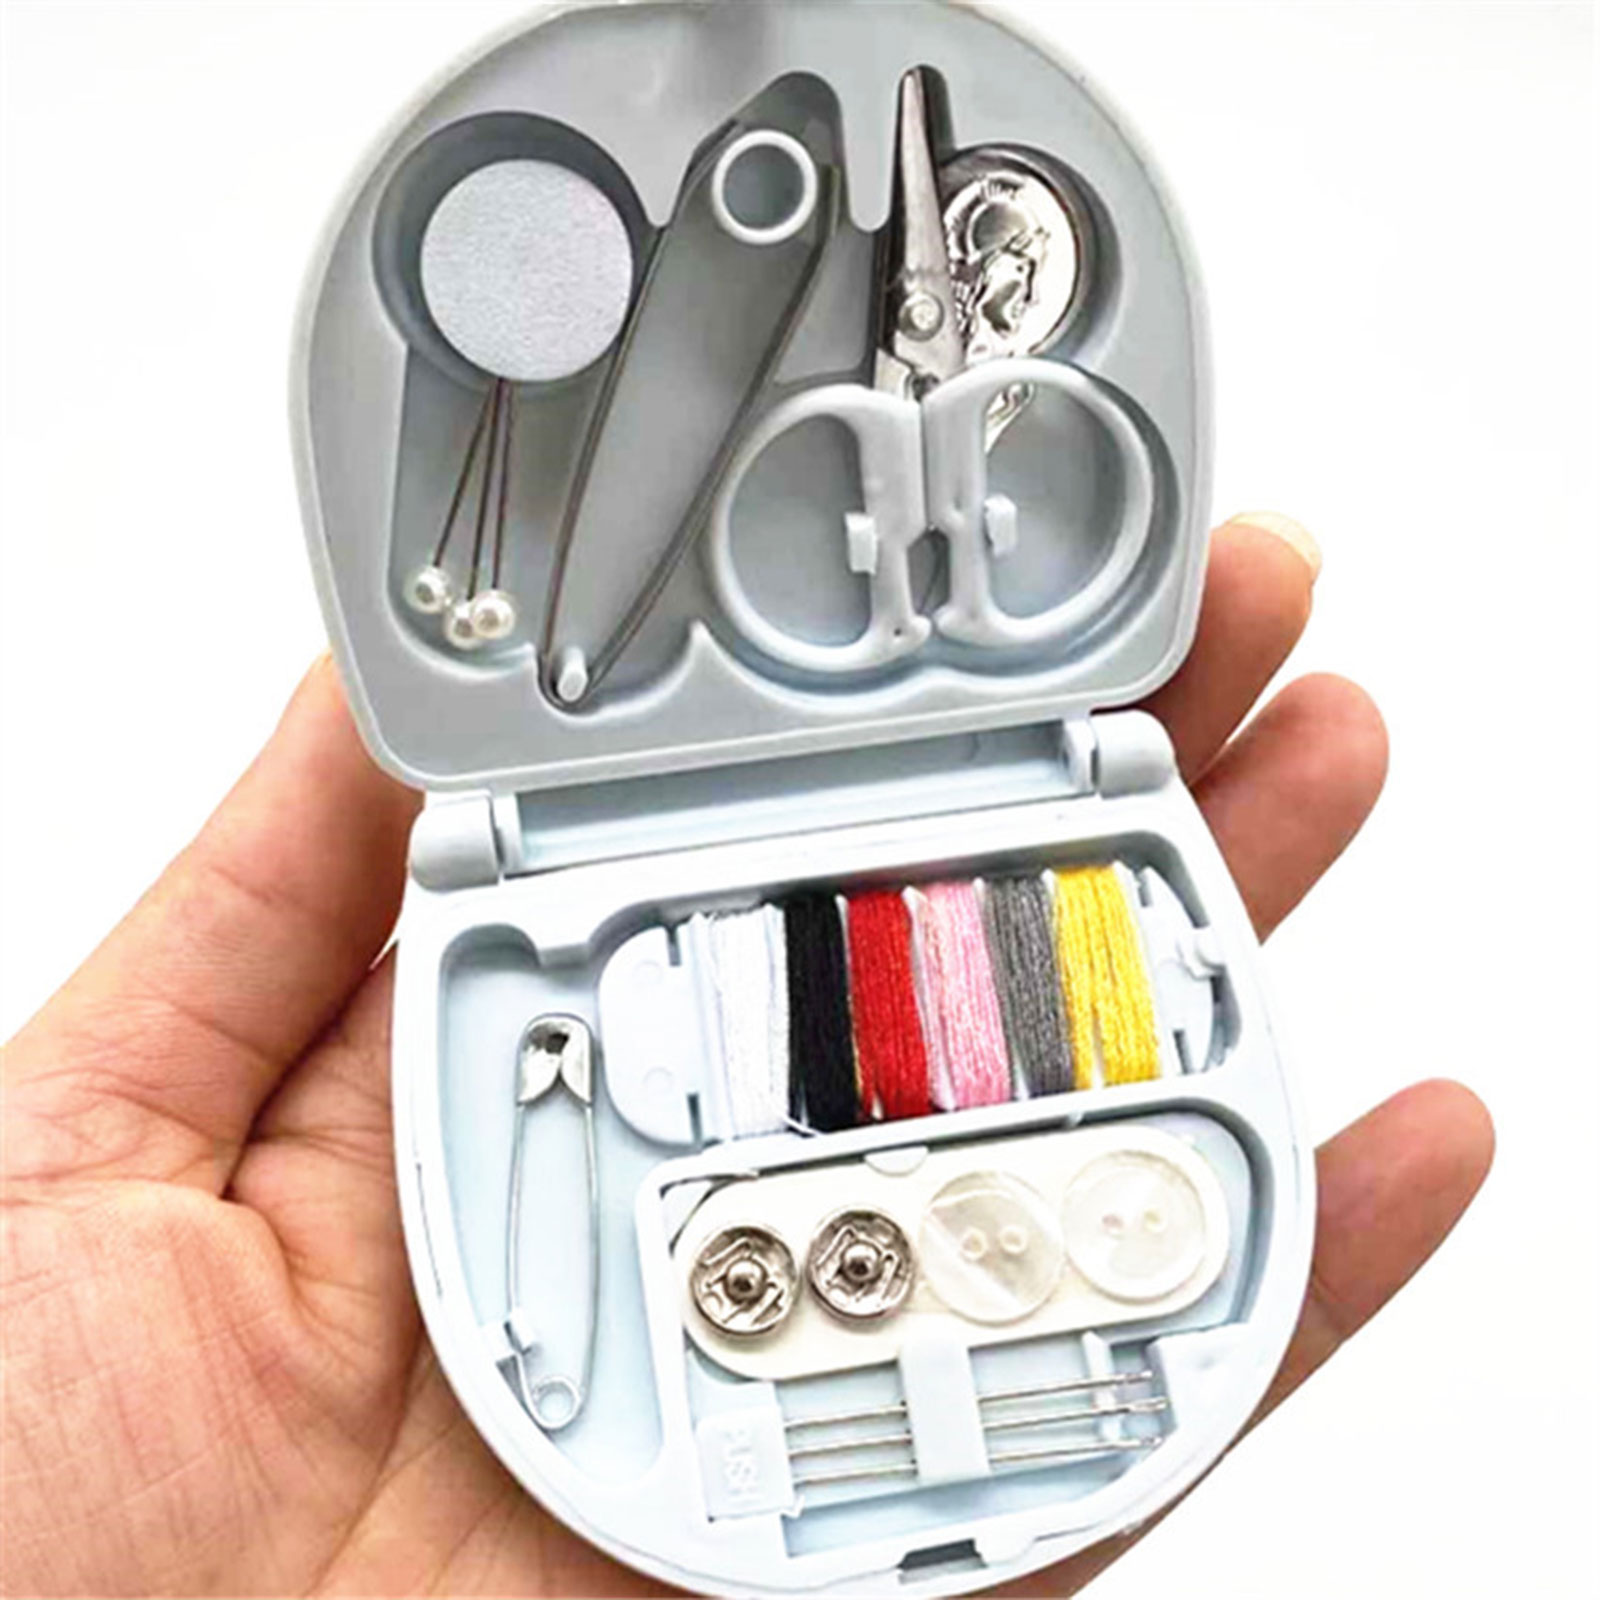 Travel Sewing Kit in Mini Folding Organizer Box Basic Needle and